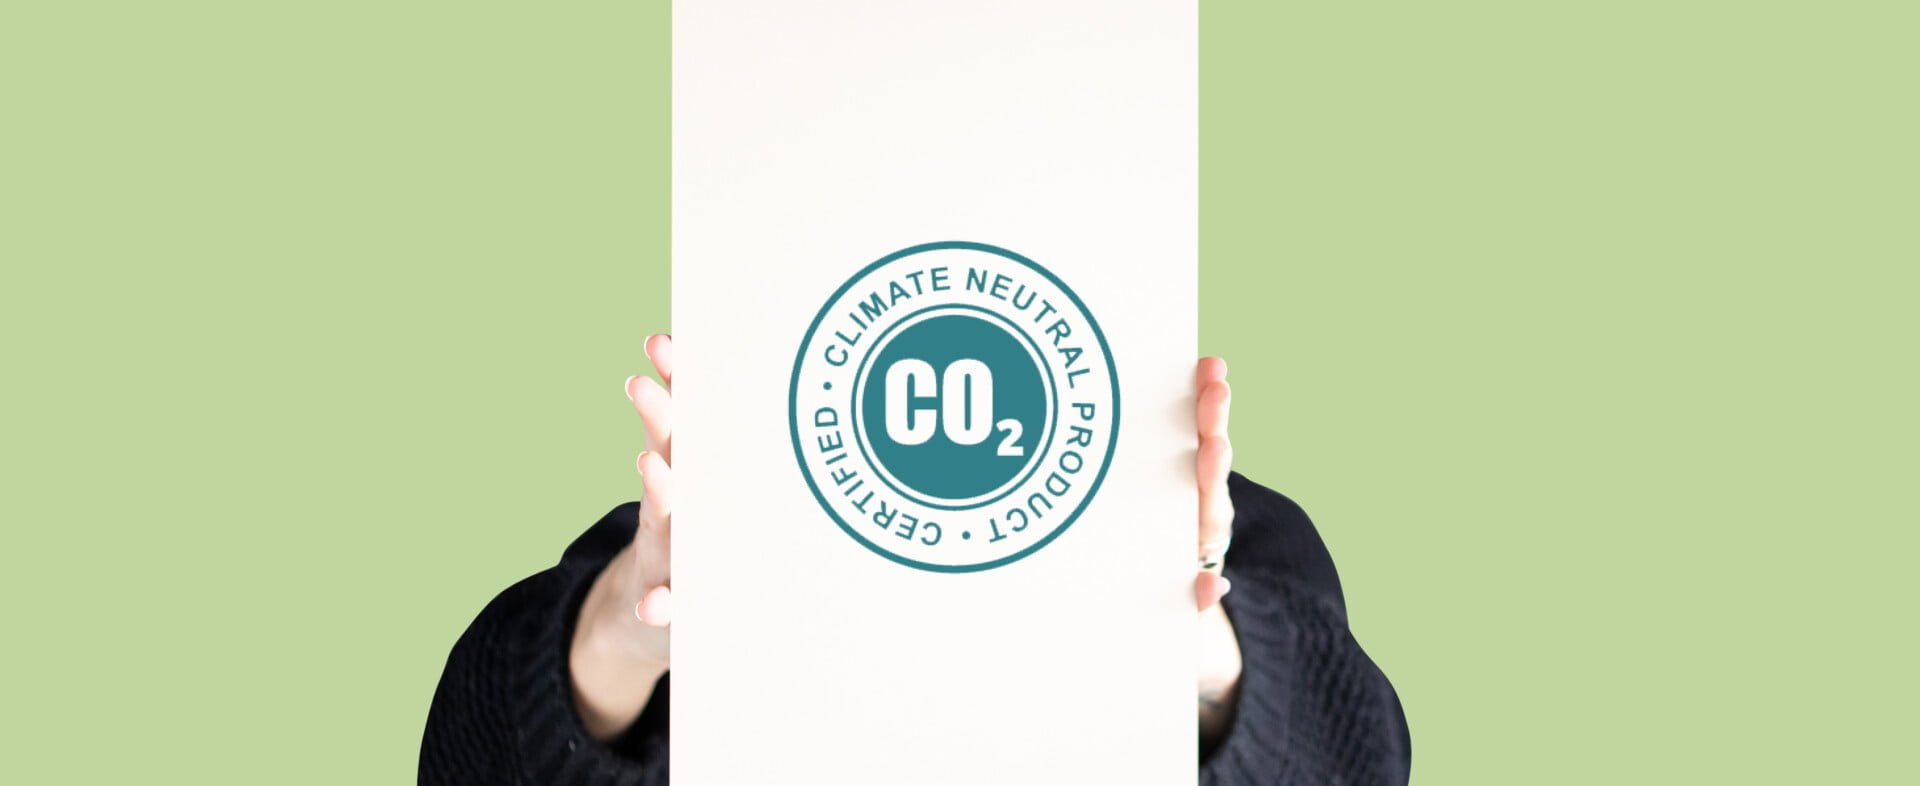 PAPERWISE IST CO2-NEUTRALES PAPIER: WAS HAT ES DAMIT AUF SICH?